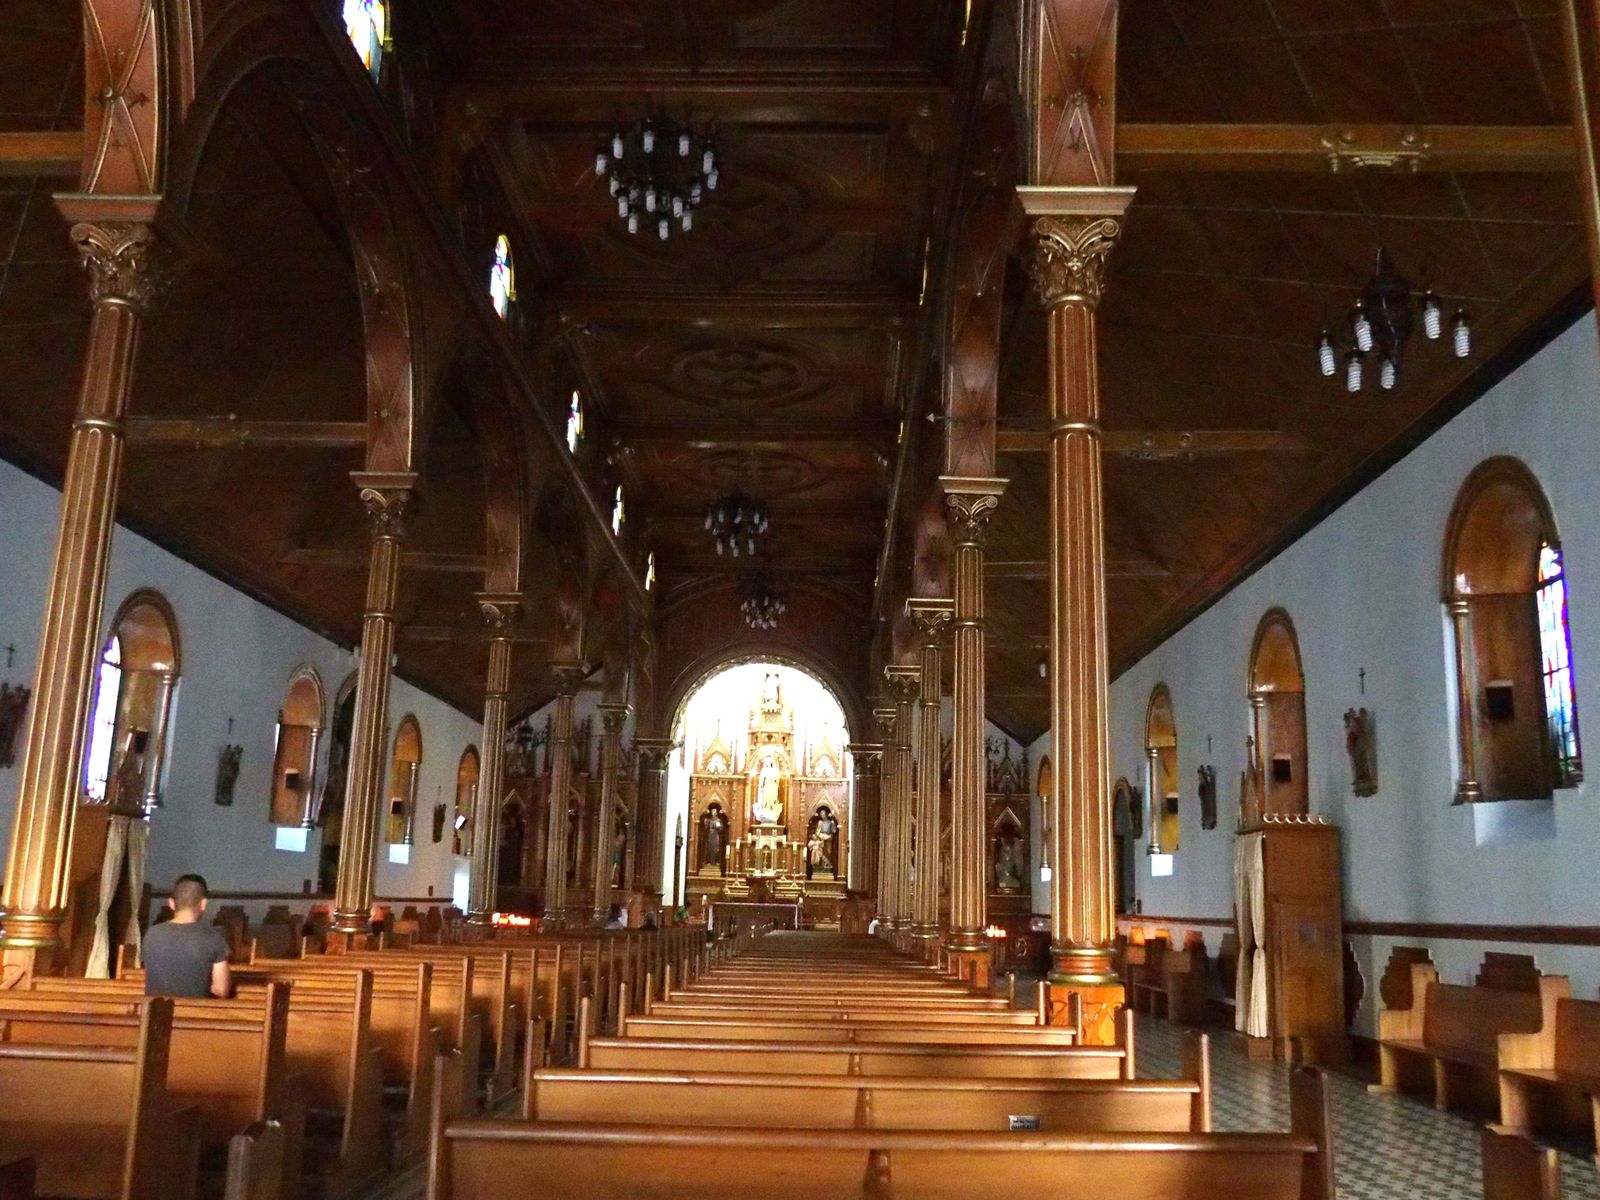 Visiter l'intérieur de l'Eglise de Guatape Colombie